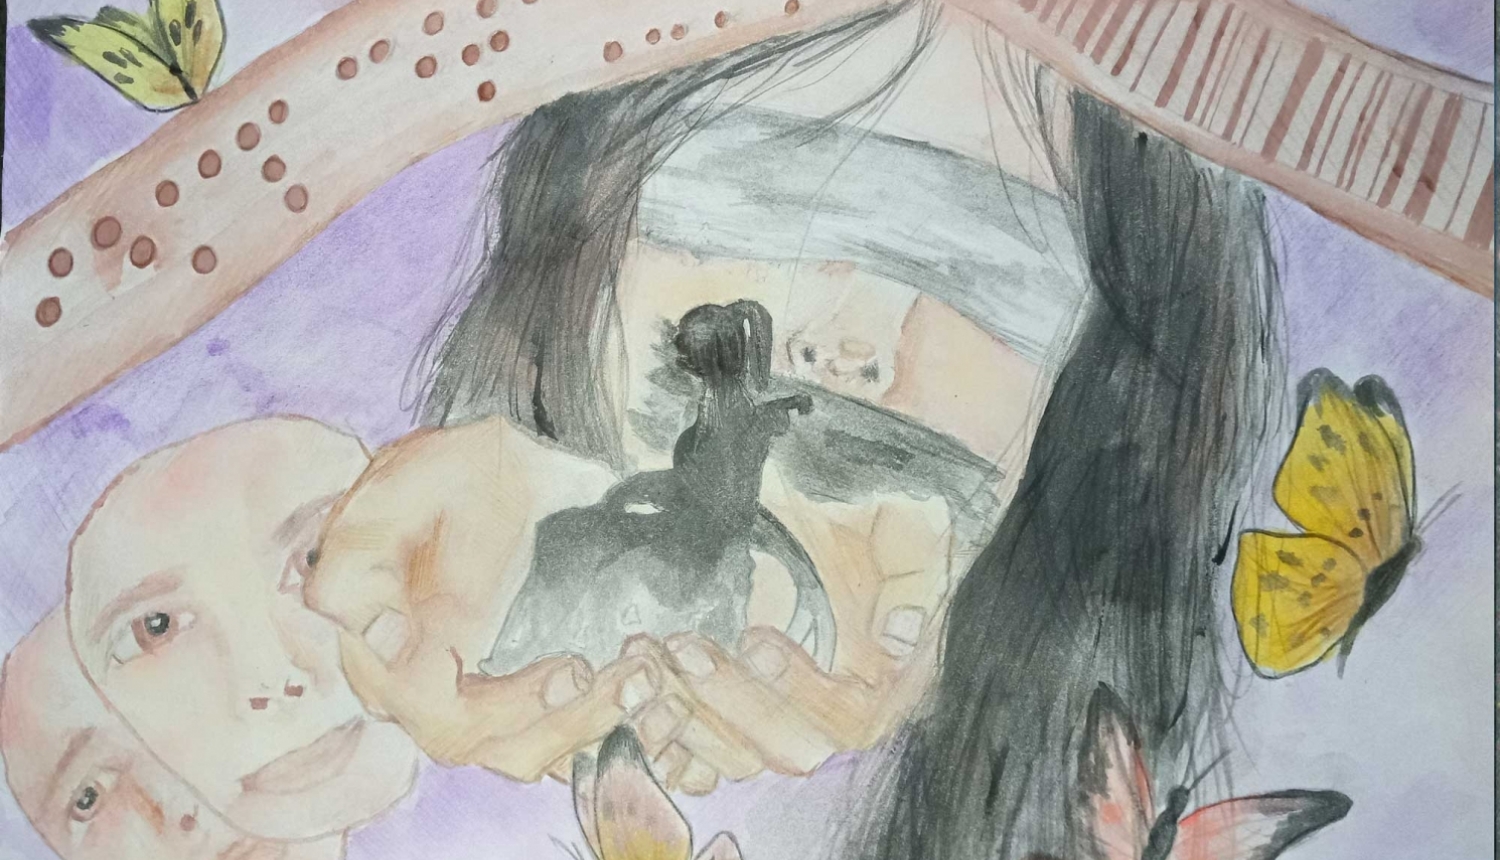 Zīmējums - tumšmatainas meitenes seja ar aizsietām acīm un muti